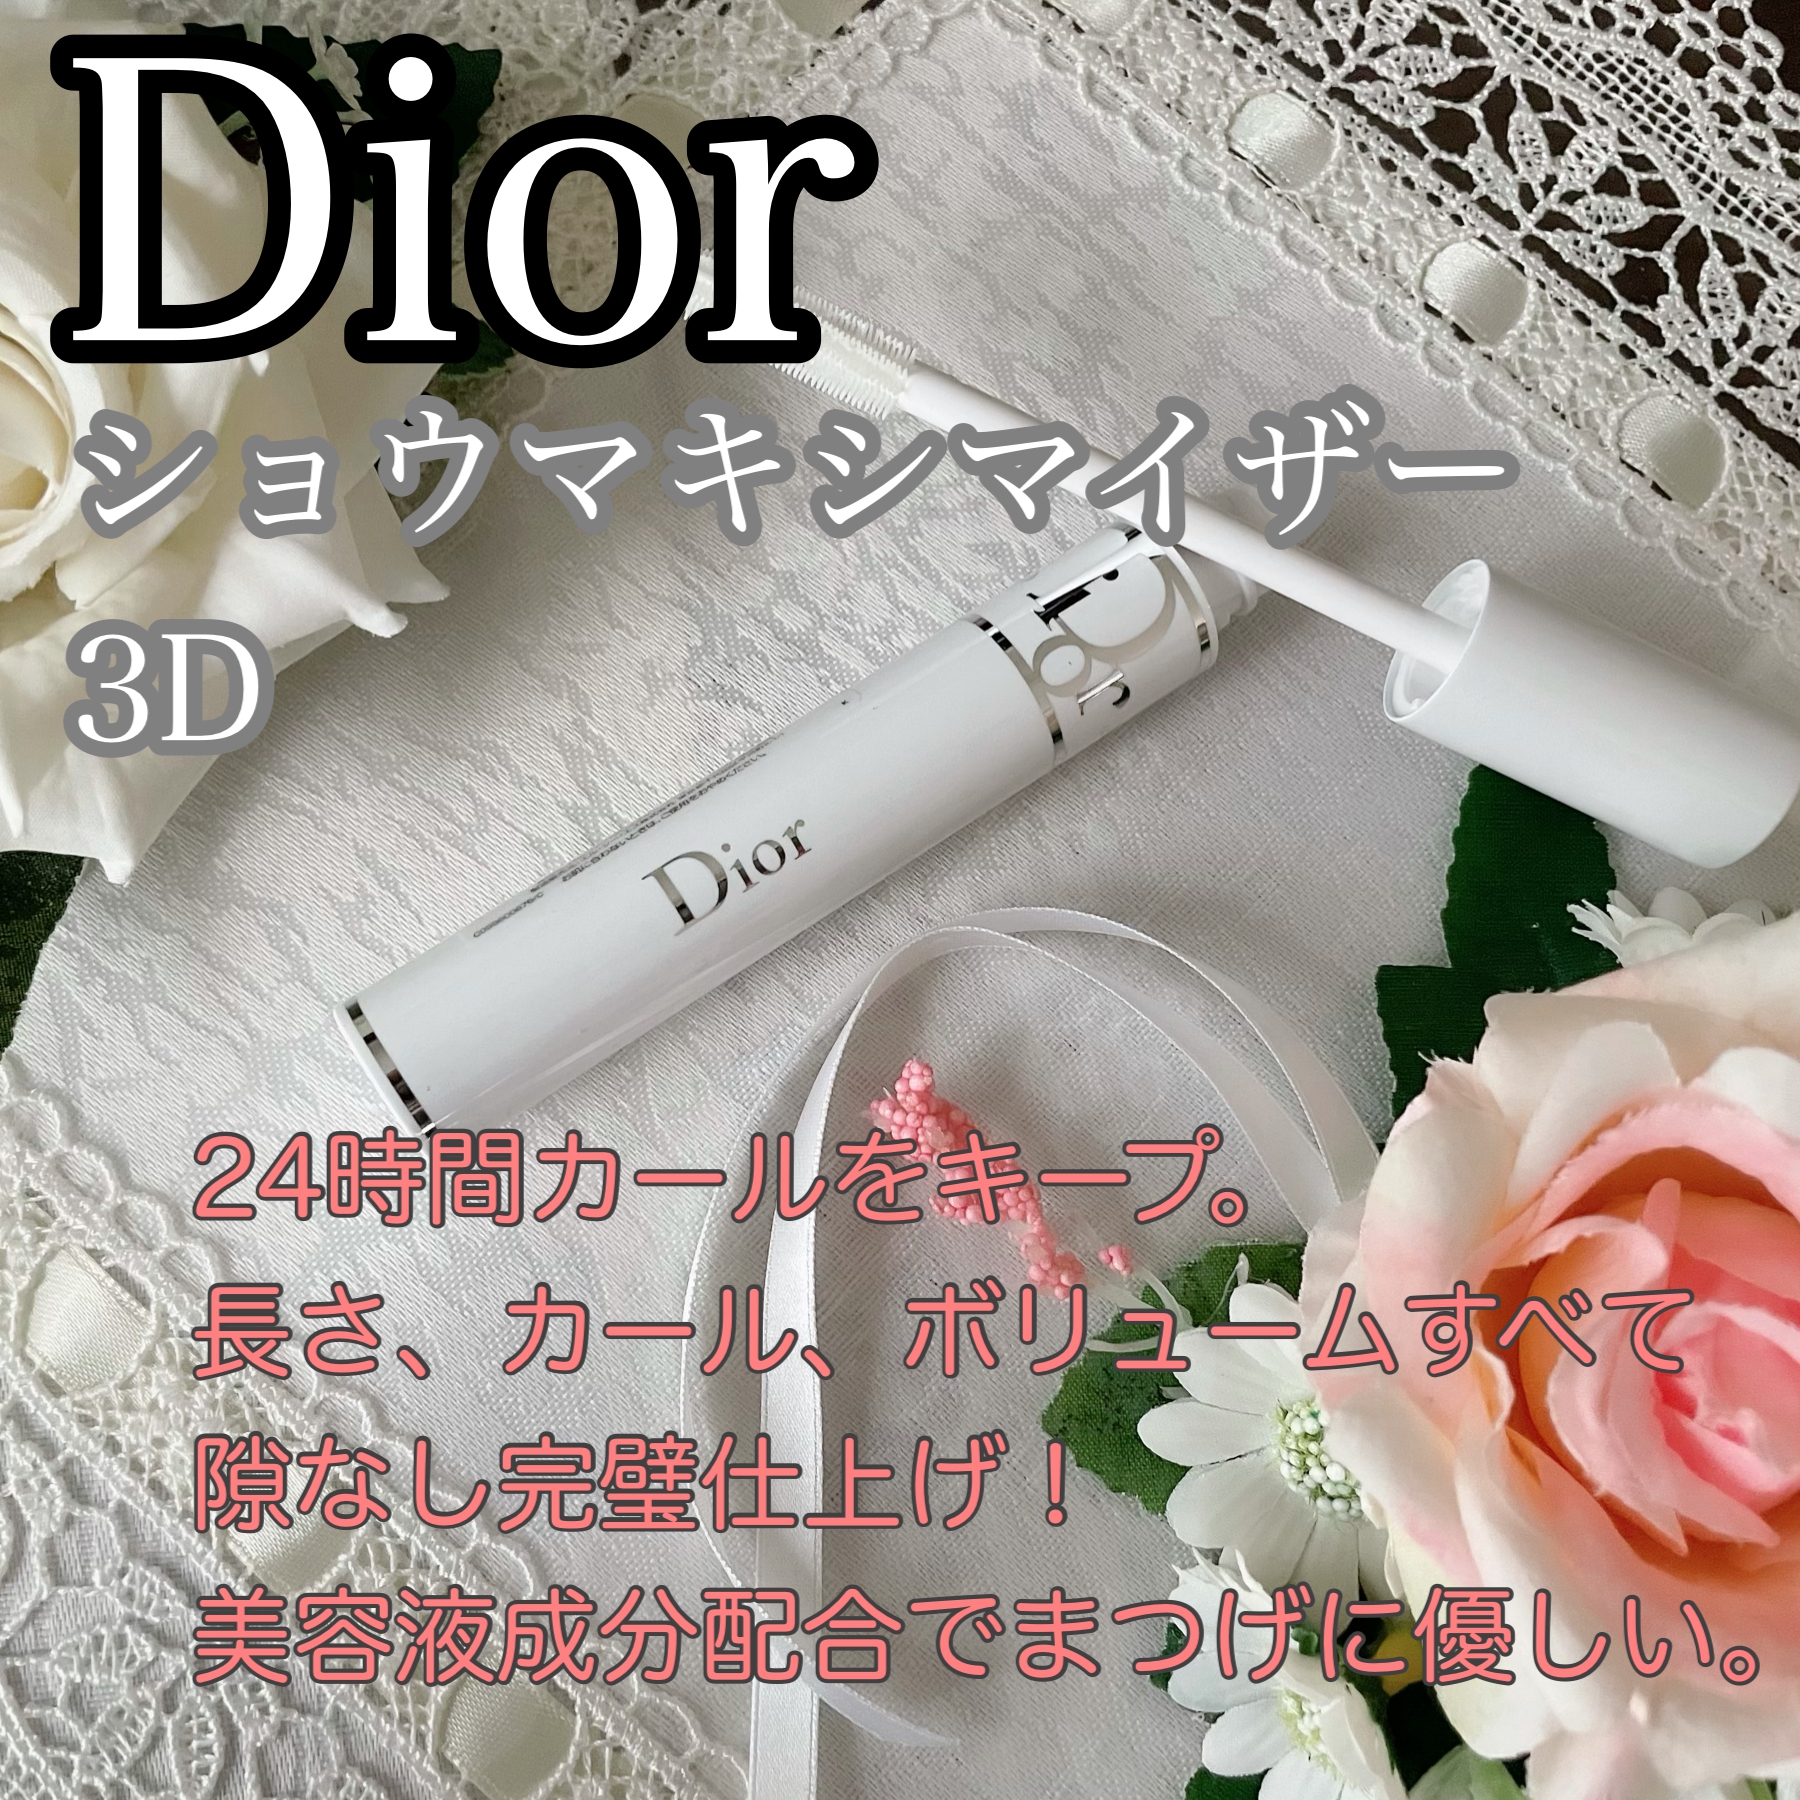 Dior(ディオール) ショウ マキシマイザー 3Dを使ったかおきちさんのクチコミ画像1